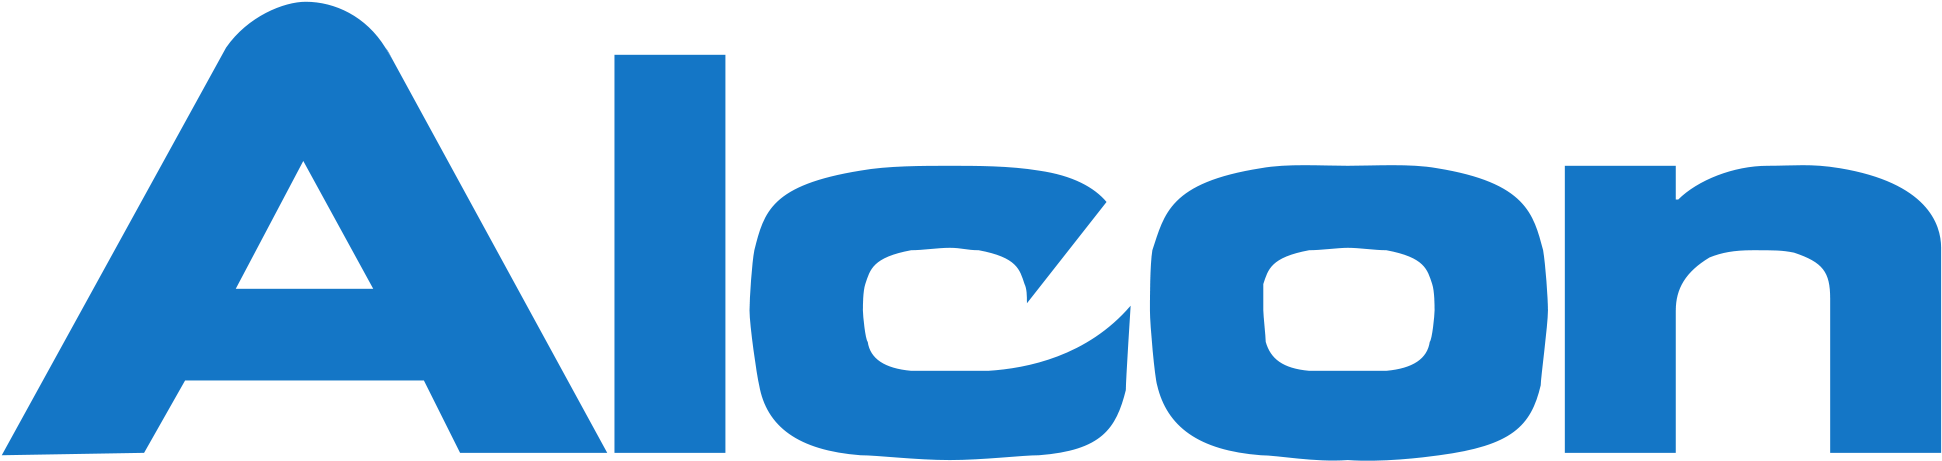 2000px Logo Alcon - Alcon Contact Lenses Logo (2000x520)